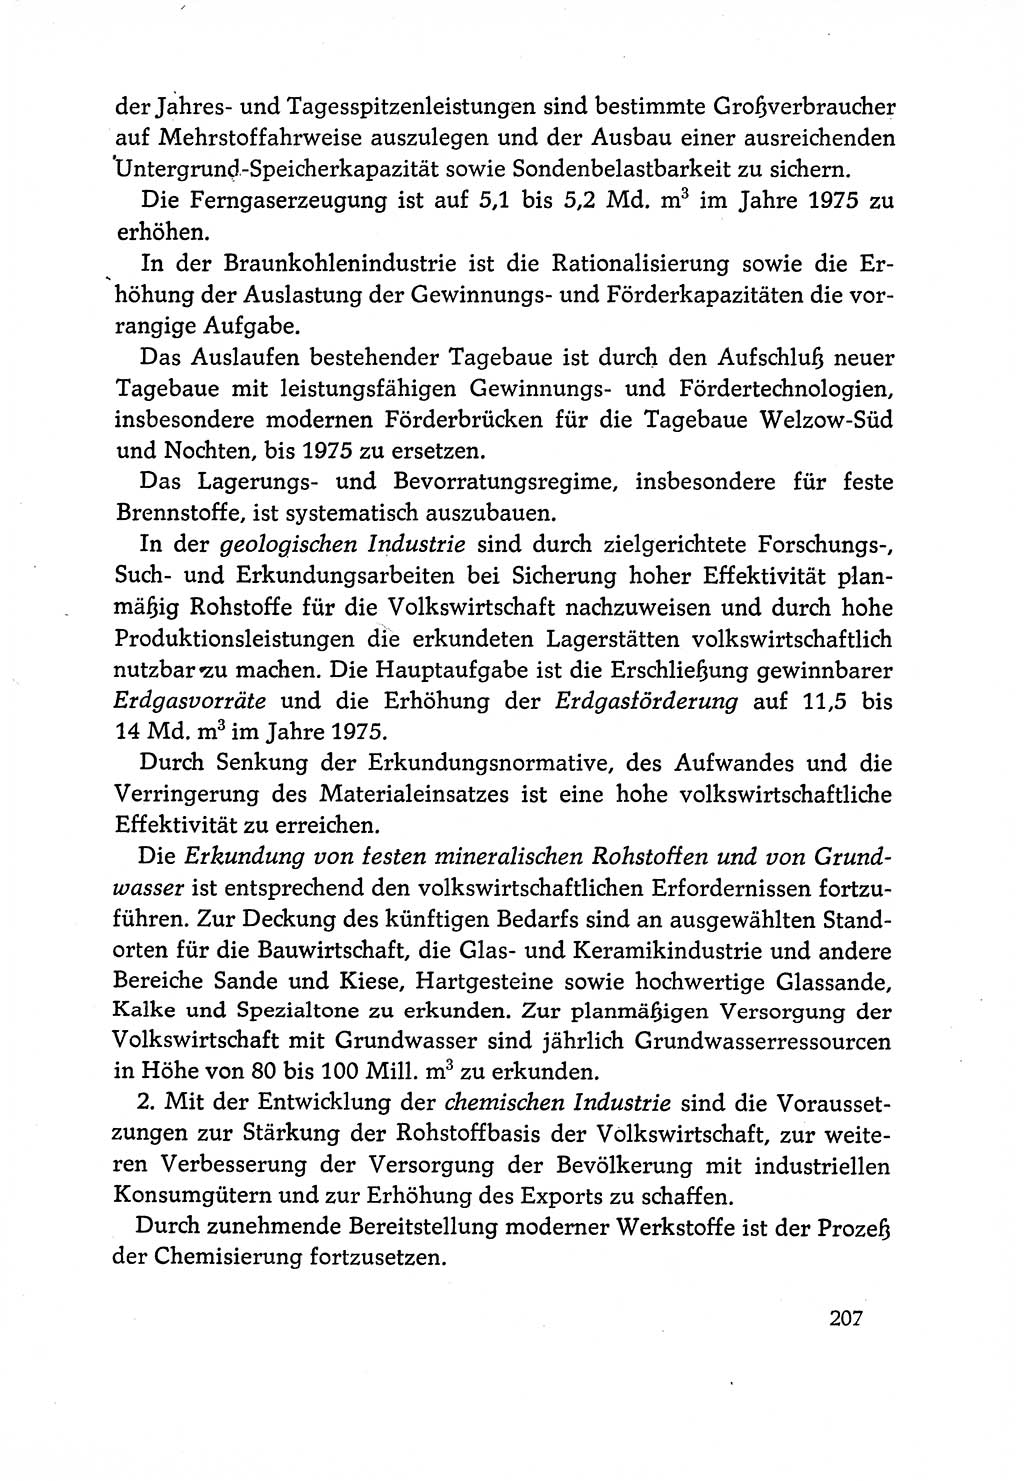 Dokumente der Sozialistischen Einheitspartei Deutschlands (SED) [Deutsche Demokratische Republik (DDR)] 1970-1971, Seite 207 (Dok. SED DDR 1970-1971, S. 207)